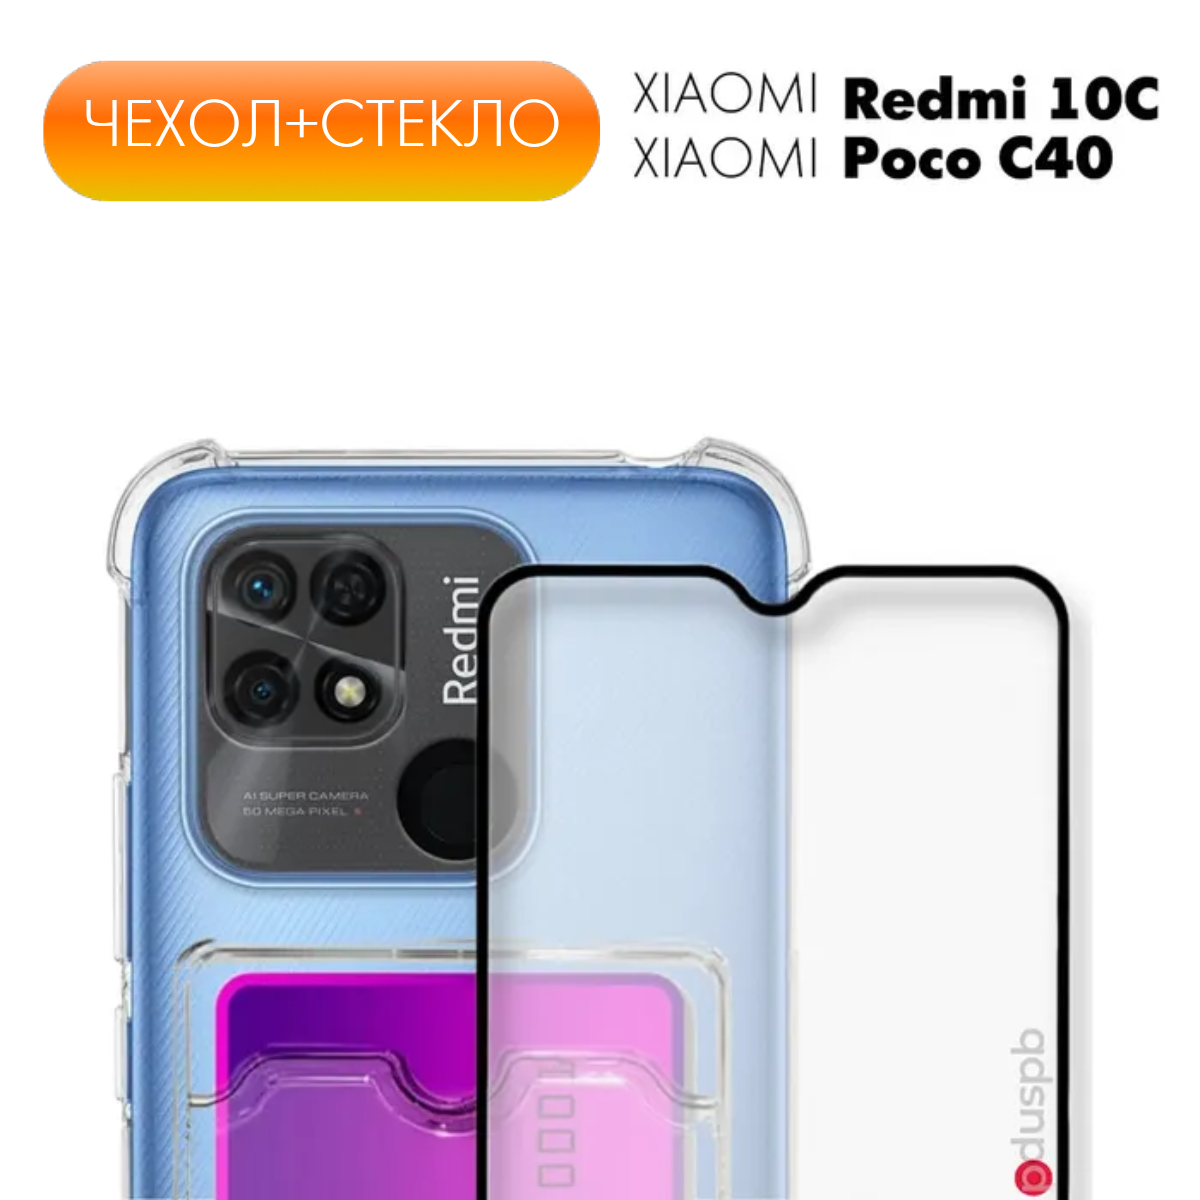 Комплект 2 в 1: Защитный противоударный прозрачный чехол клип-кейс с карманом для карт №05* + полноэкранное стекло для Xiaomi Redmi 10C / Poco C40